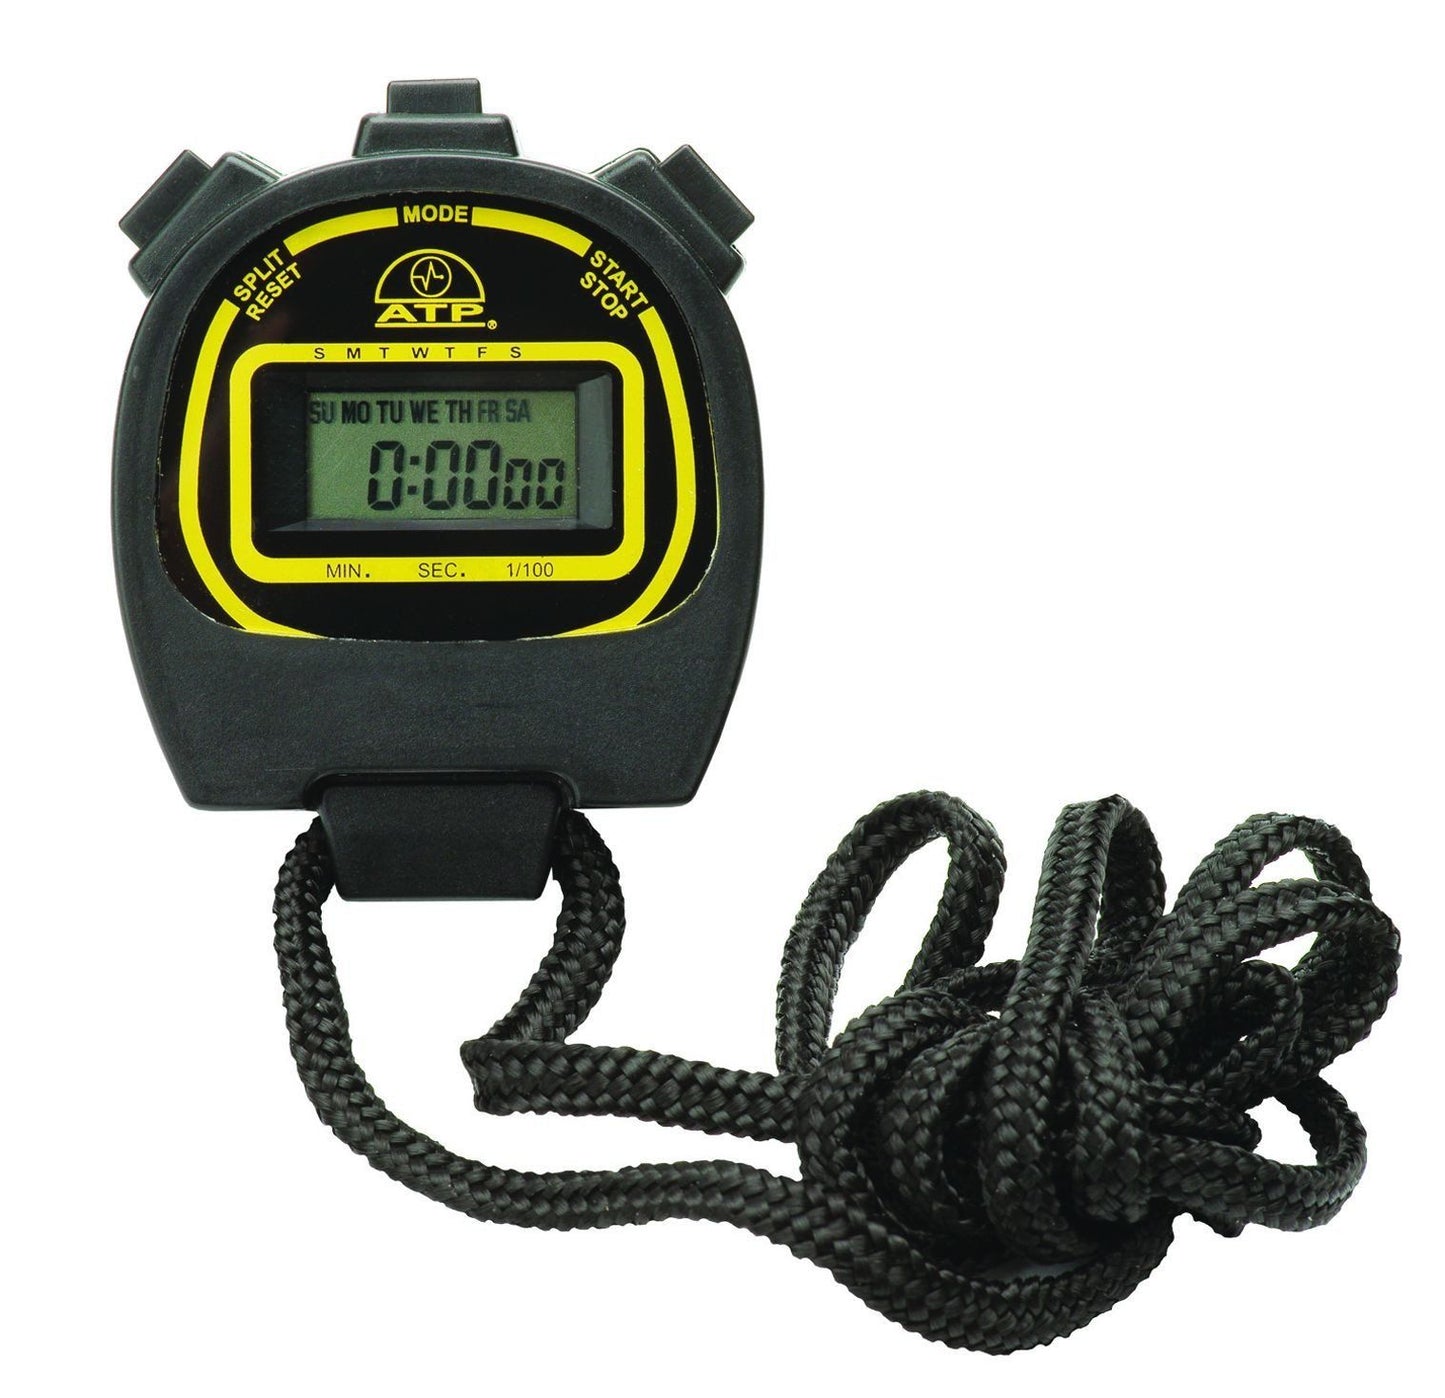 Fieldwork Equipment - Digital Stopwatch